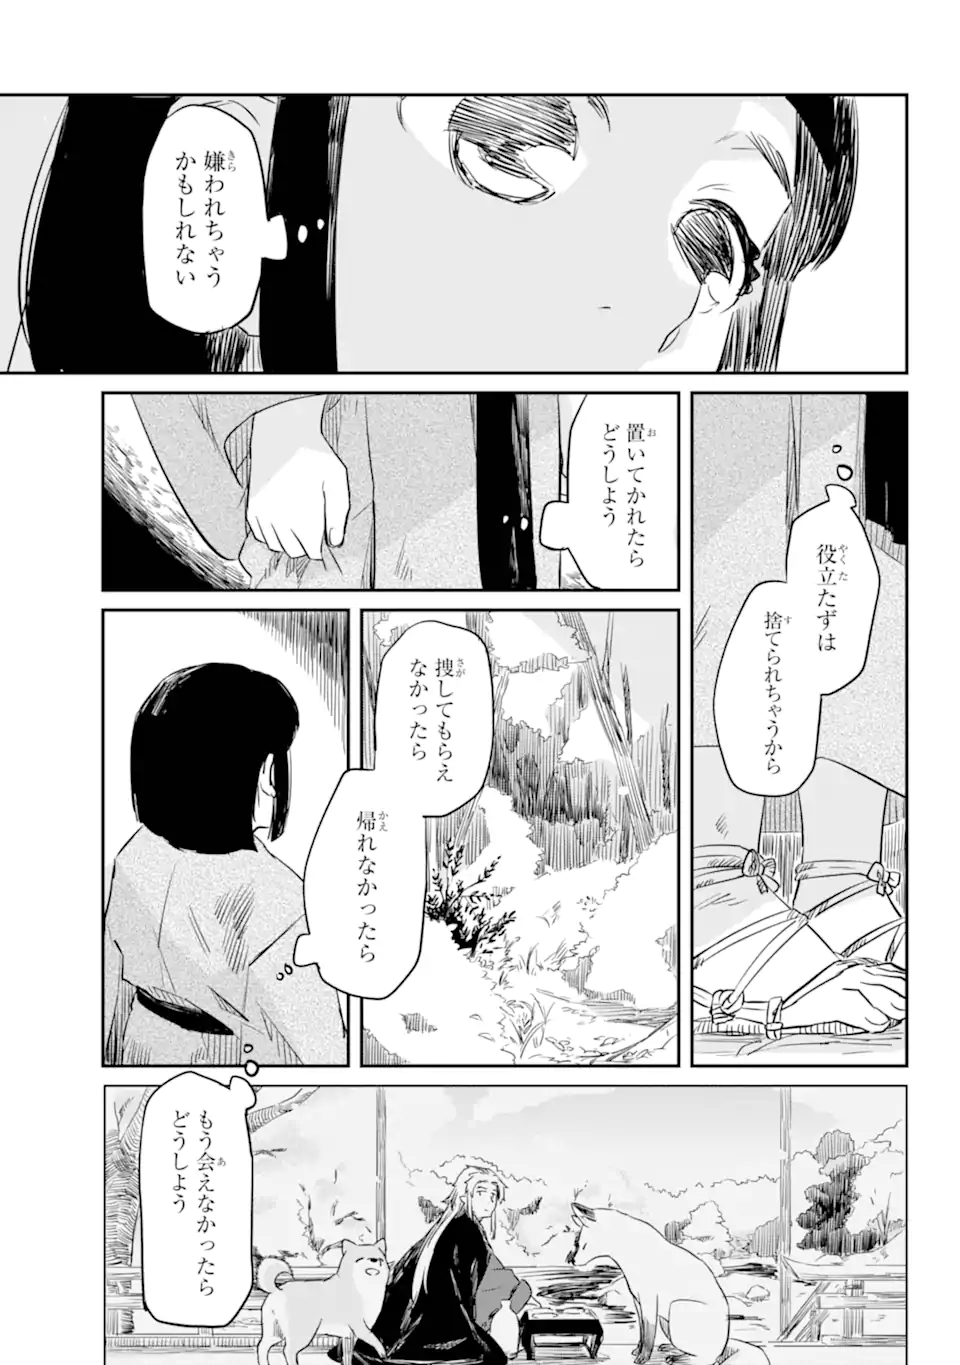 Ryuujin no Musume - Chapter 3.7 - Page 3